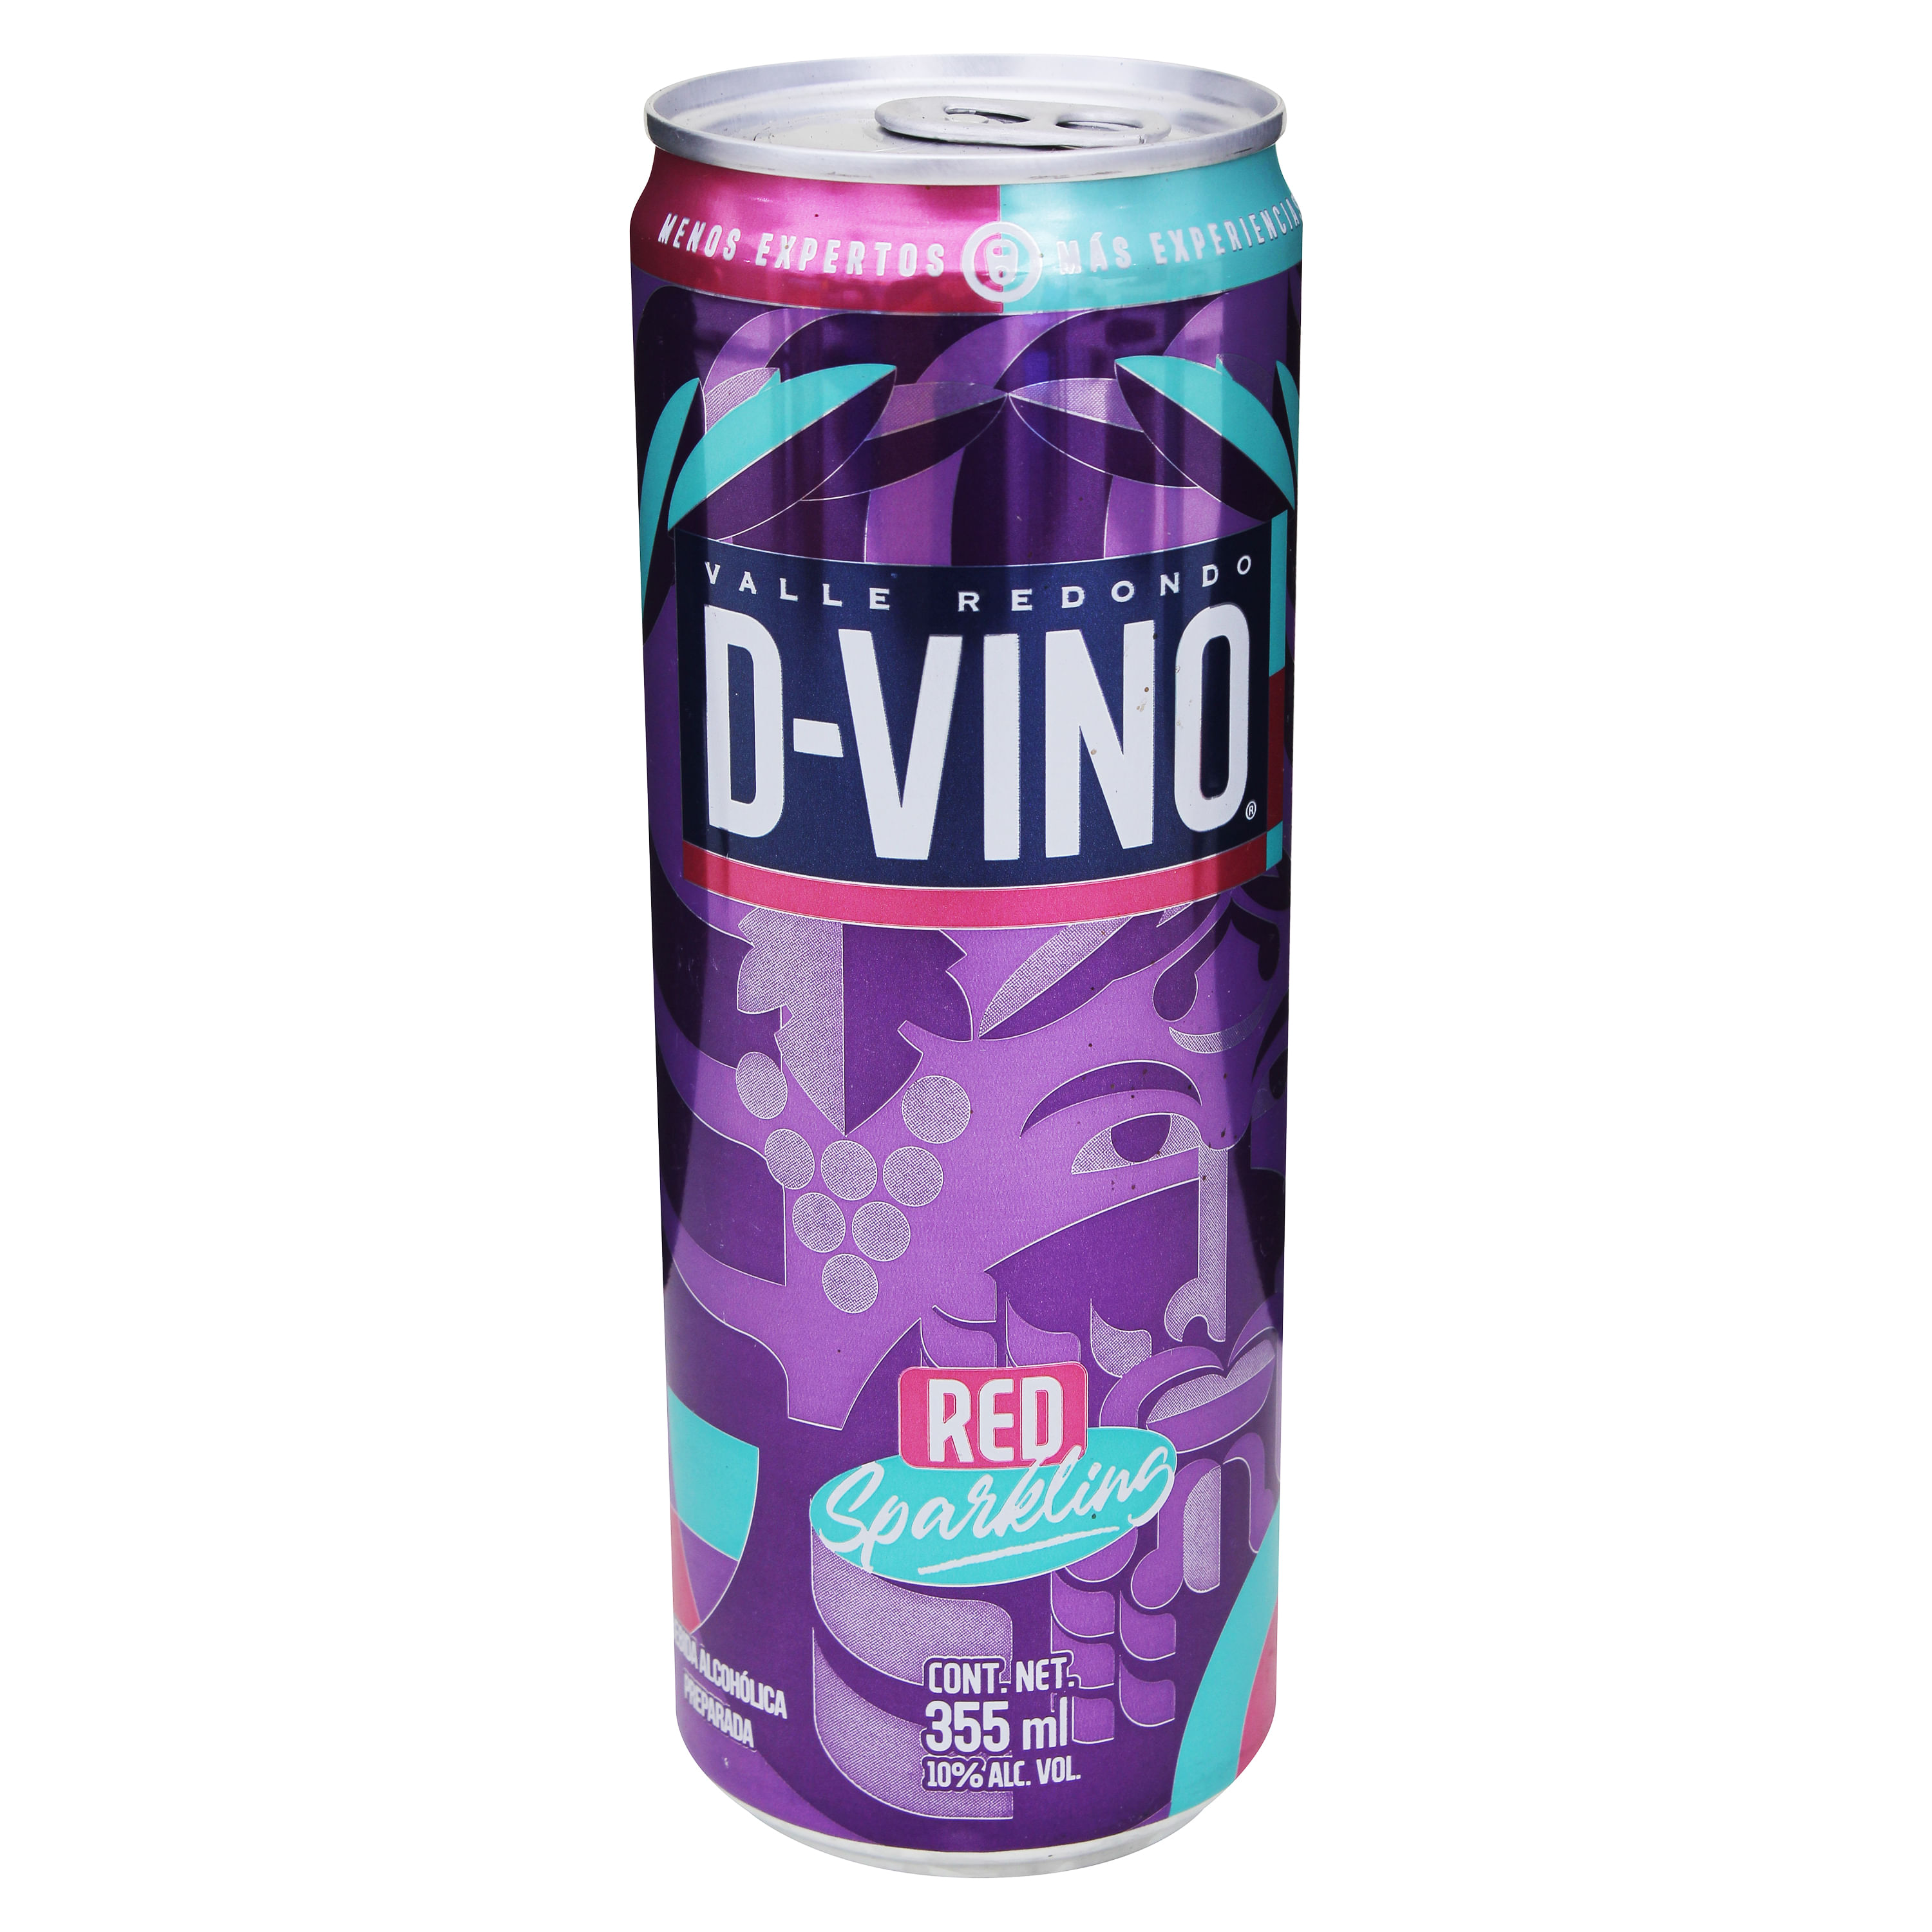 D-Vino-Red-355-Ml-1-72427